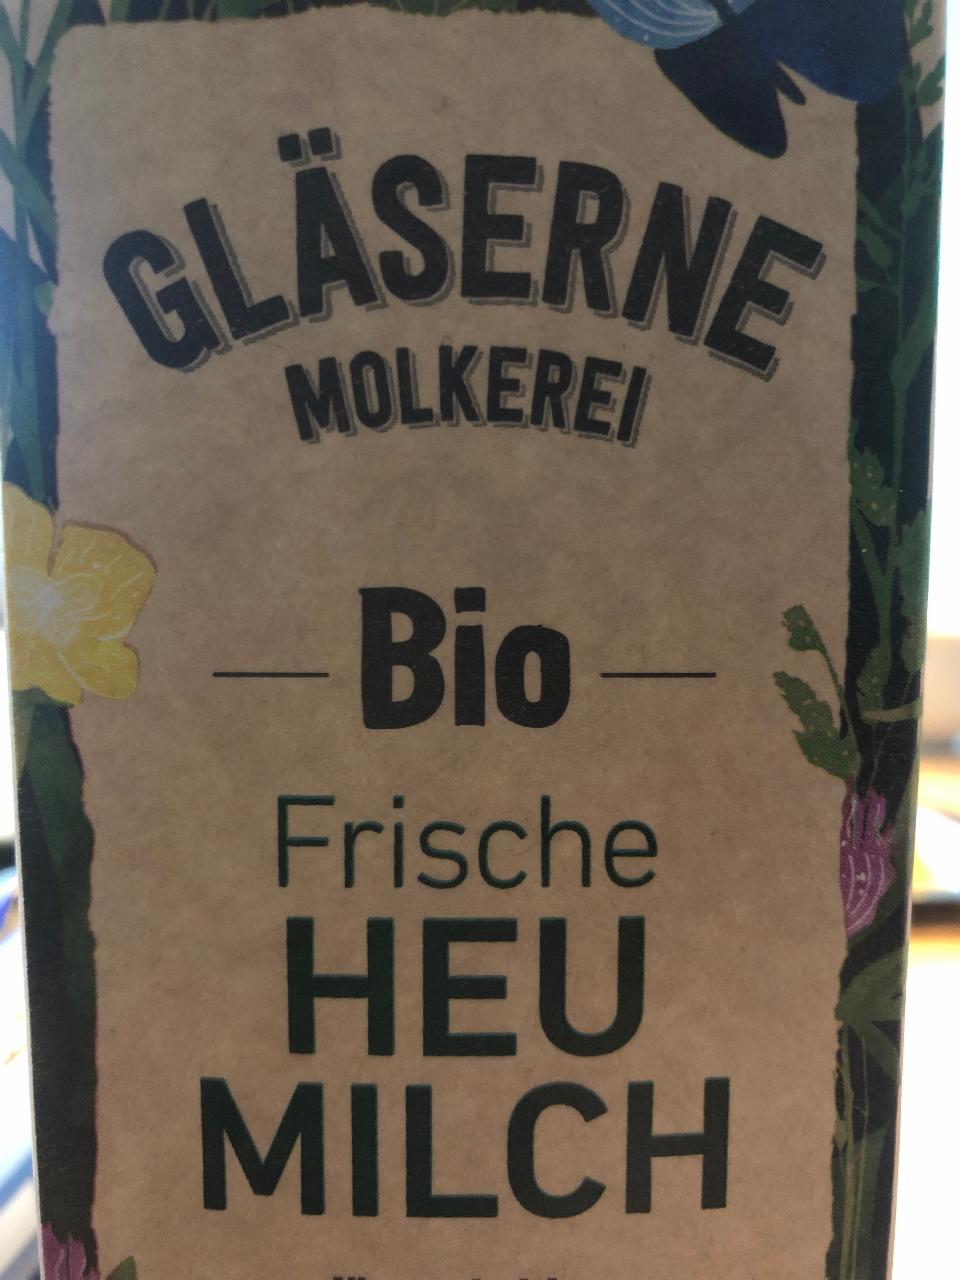 Fotografie - Bio Frische Heu Milch Gläserne Molkerei